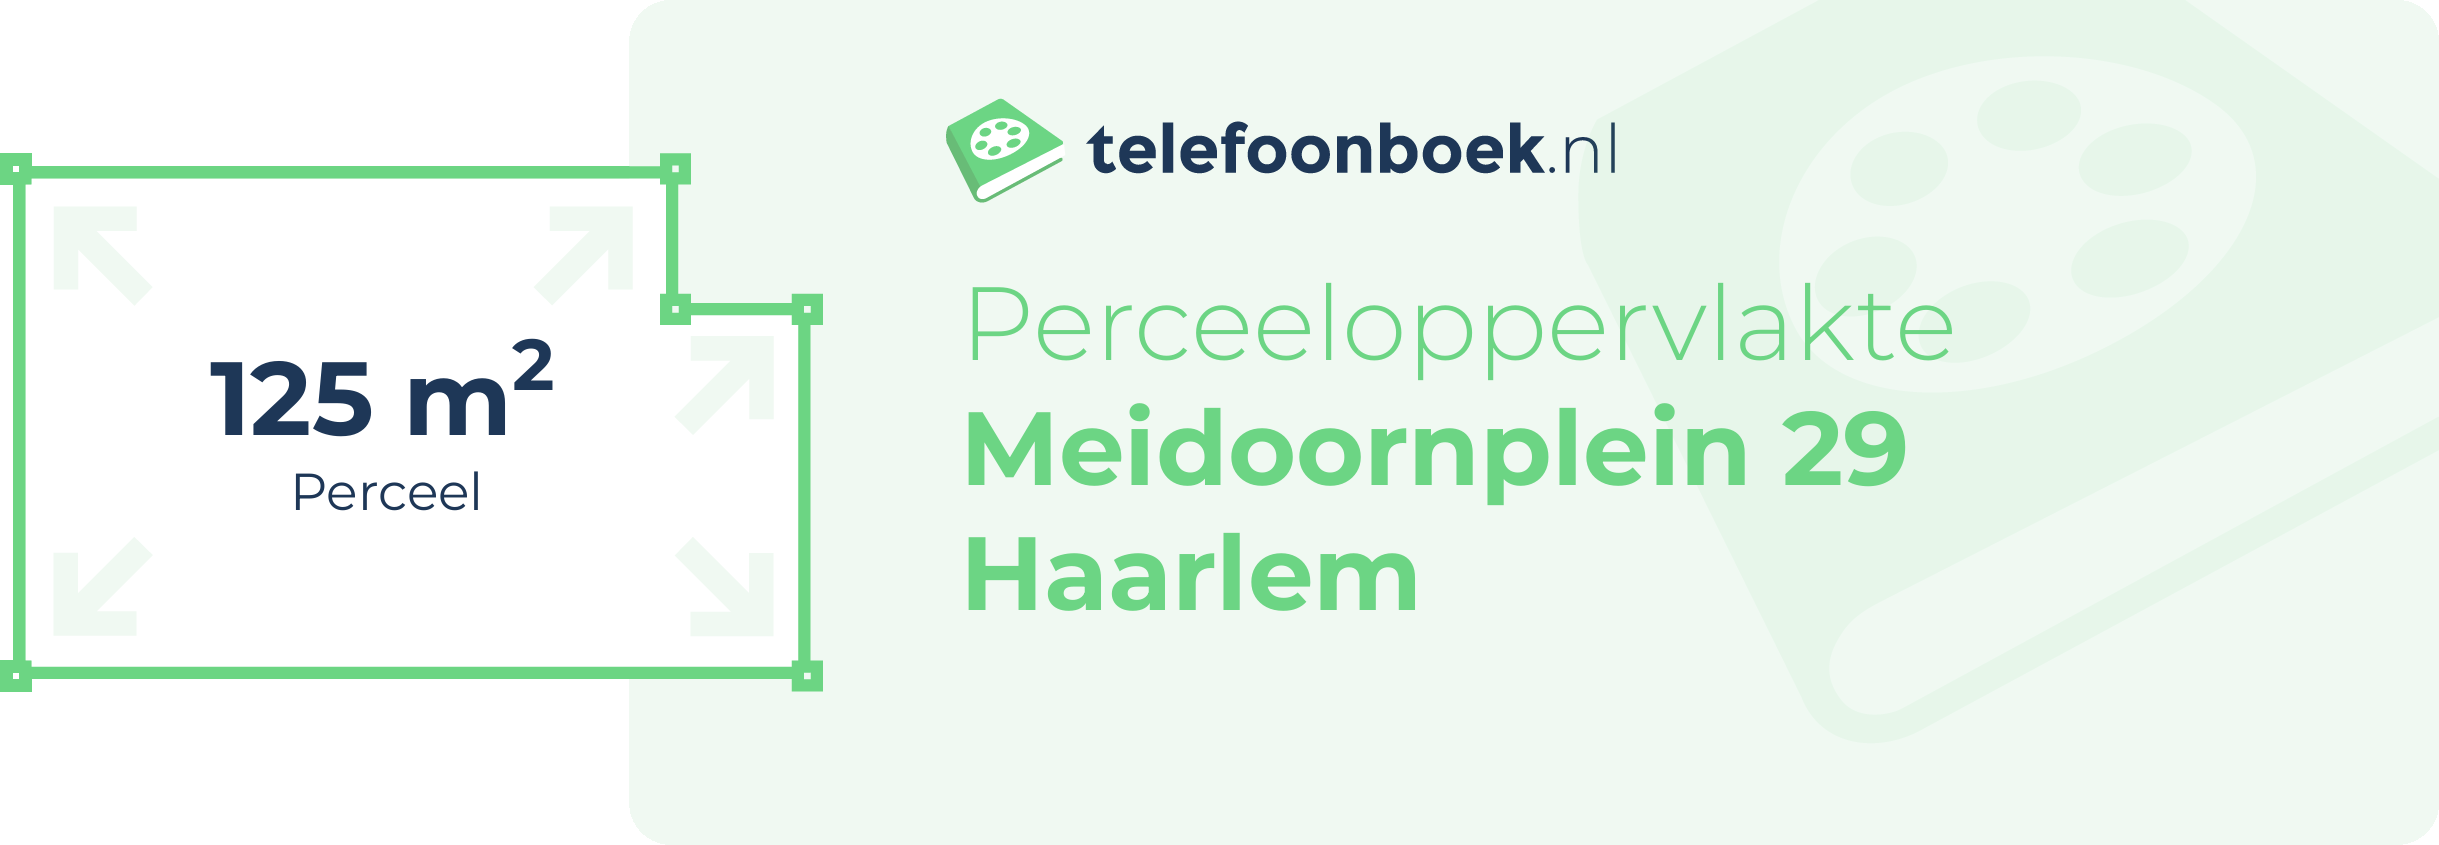 Perceeloppervlakte Meidoornplein 29 Haarlem